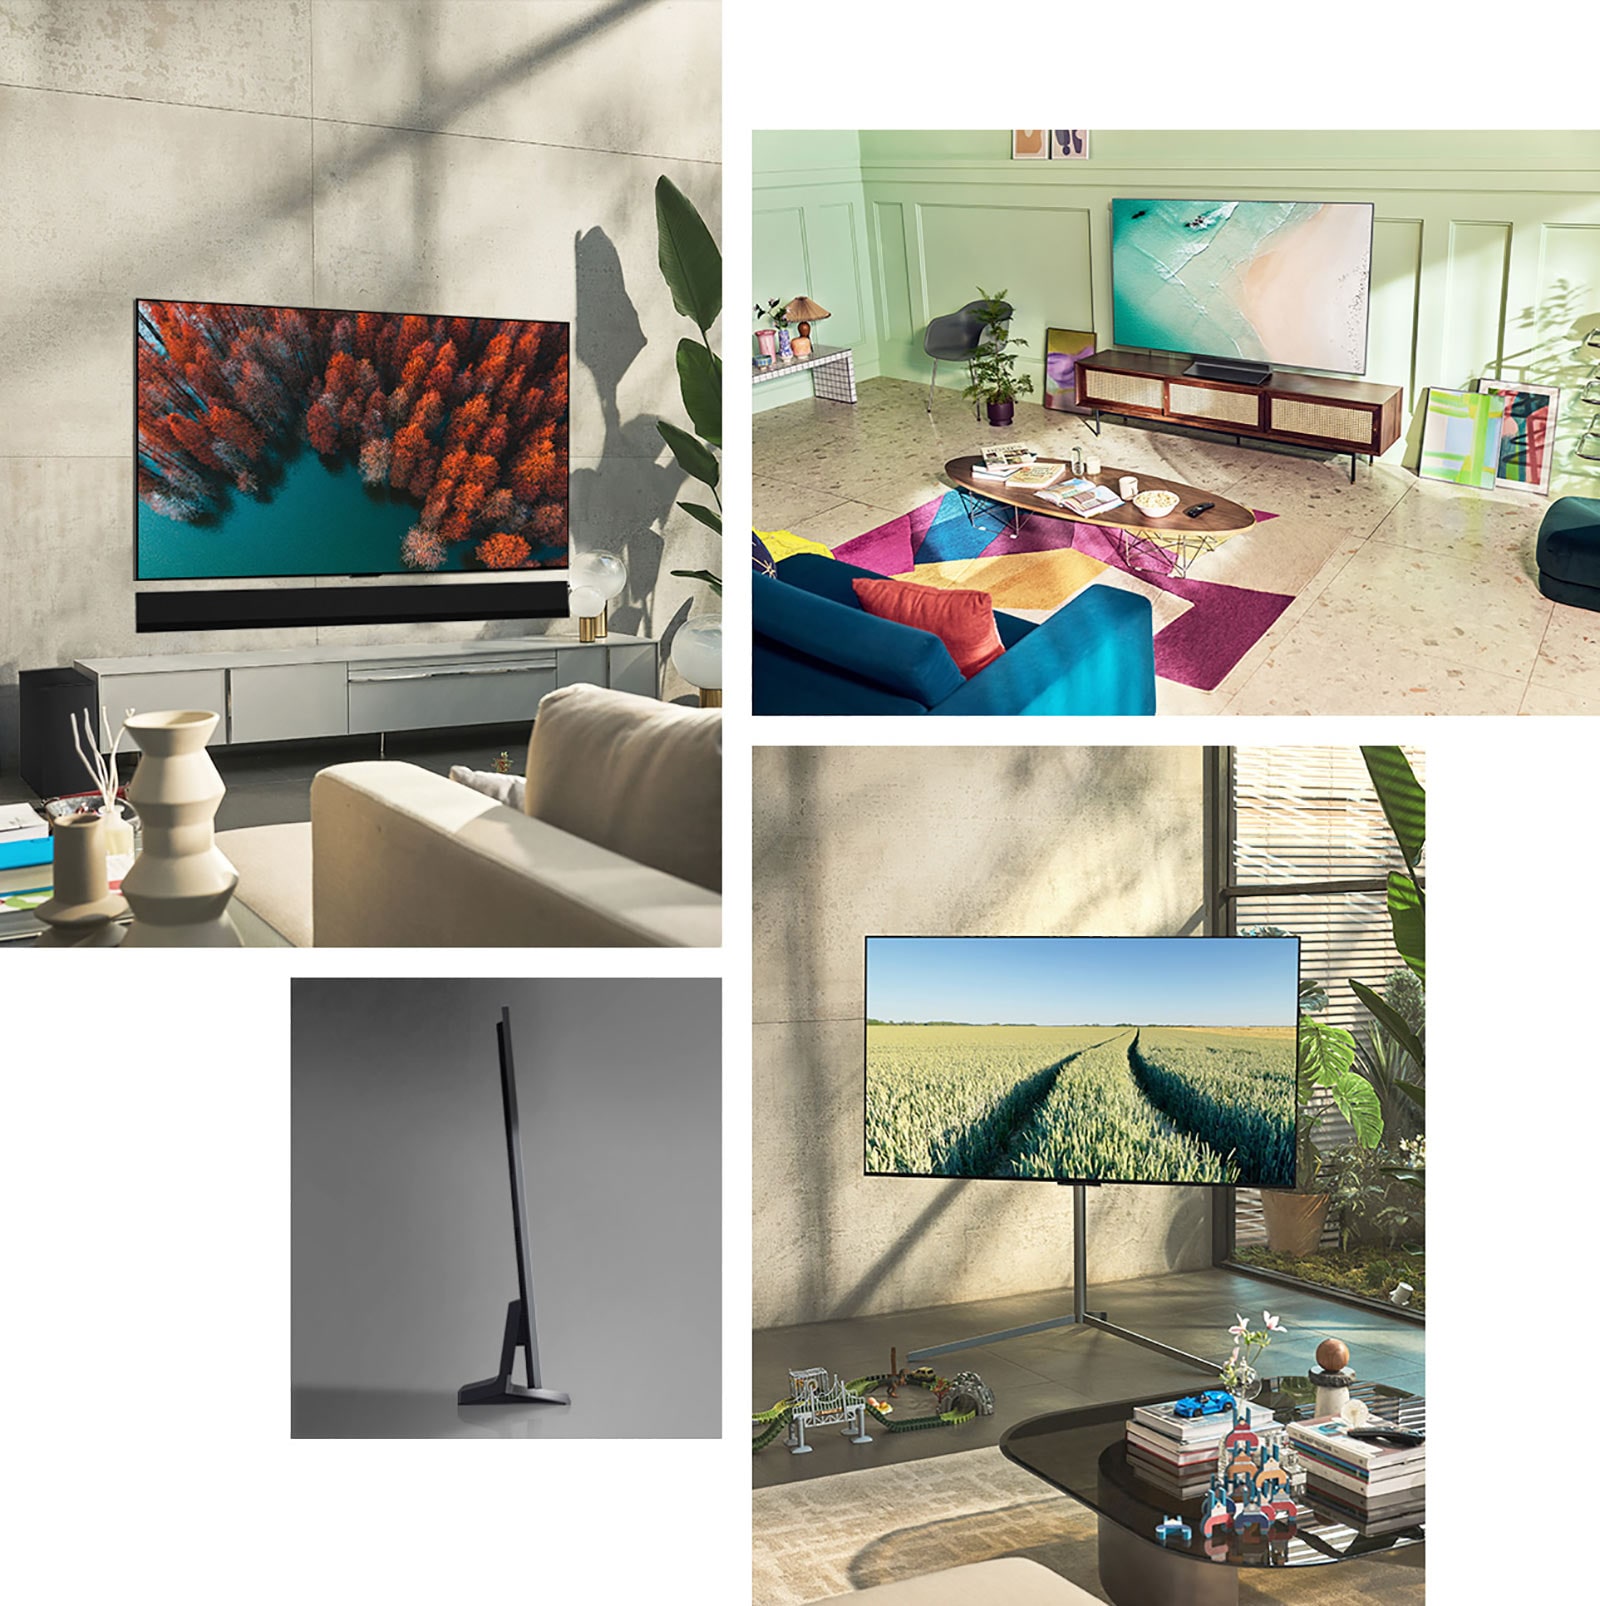 LG OLED G2 visi na zidu u dnevnoj sobi neutralnih boja s biljkama i rustikalnim ukrasima. LG OLED G2 stoji na televizijskom stalku u menta zelenoj sobi sa šarenim umjetninama i namještajem. LG OLED G2 s galerijskim stalkom nalazi se u kutu sobe u obiteljskoj kući. Prikaz bočne strane ultratankog ruba televizora LG OLED G2.